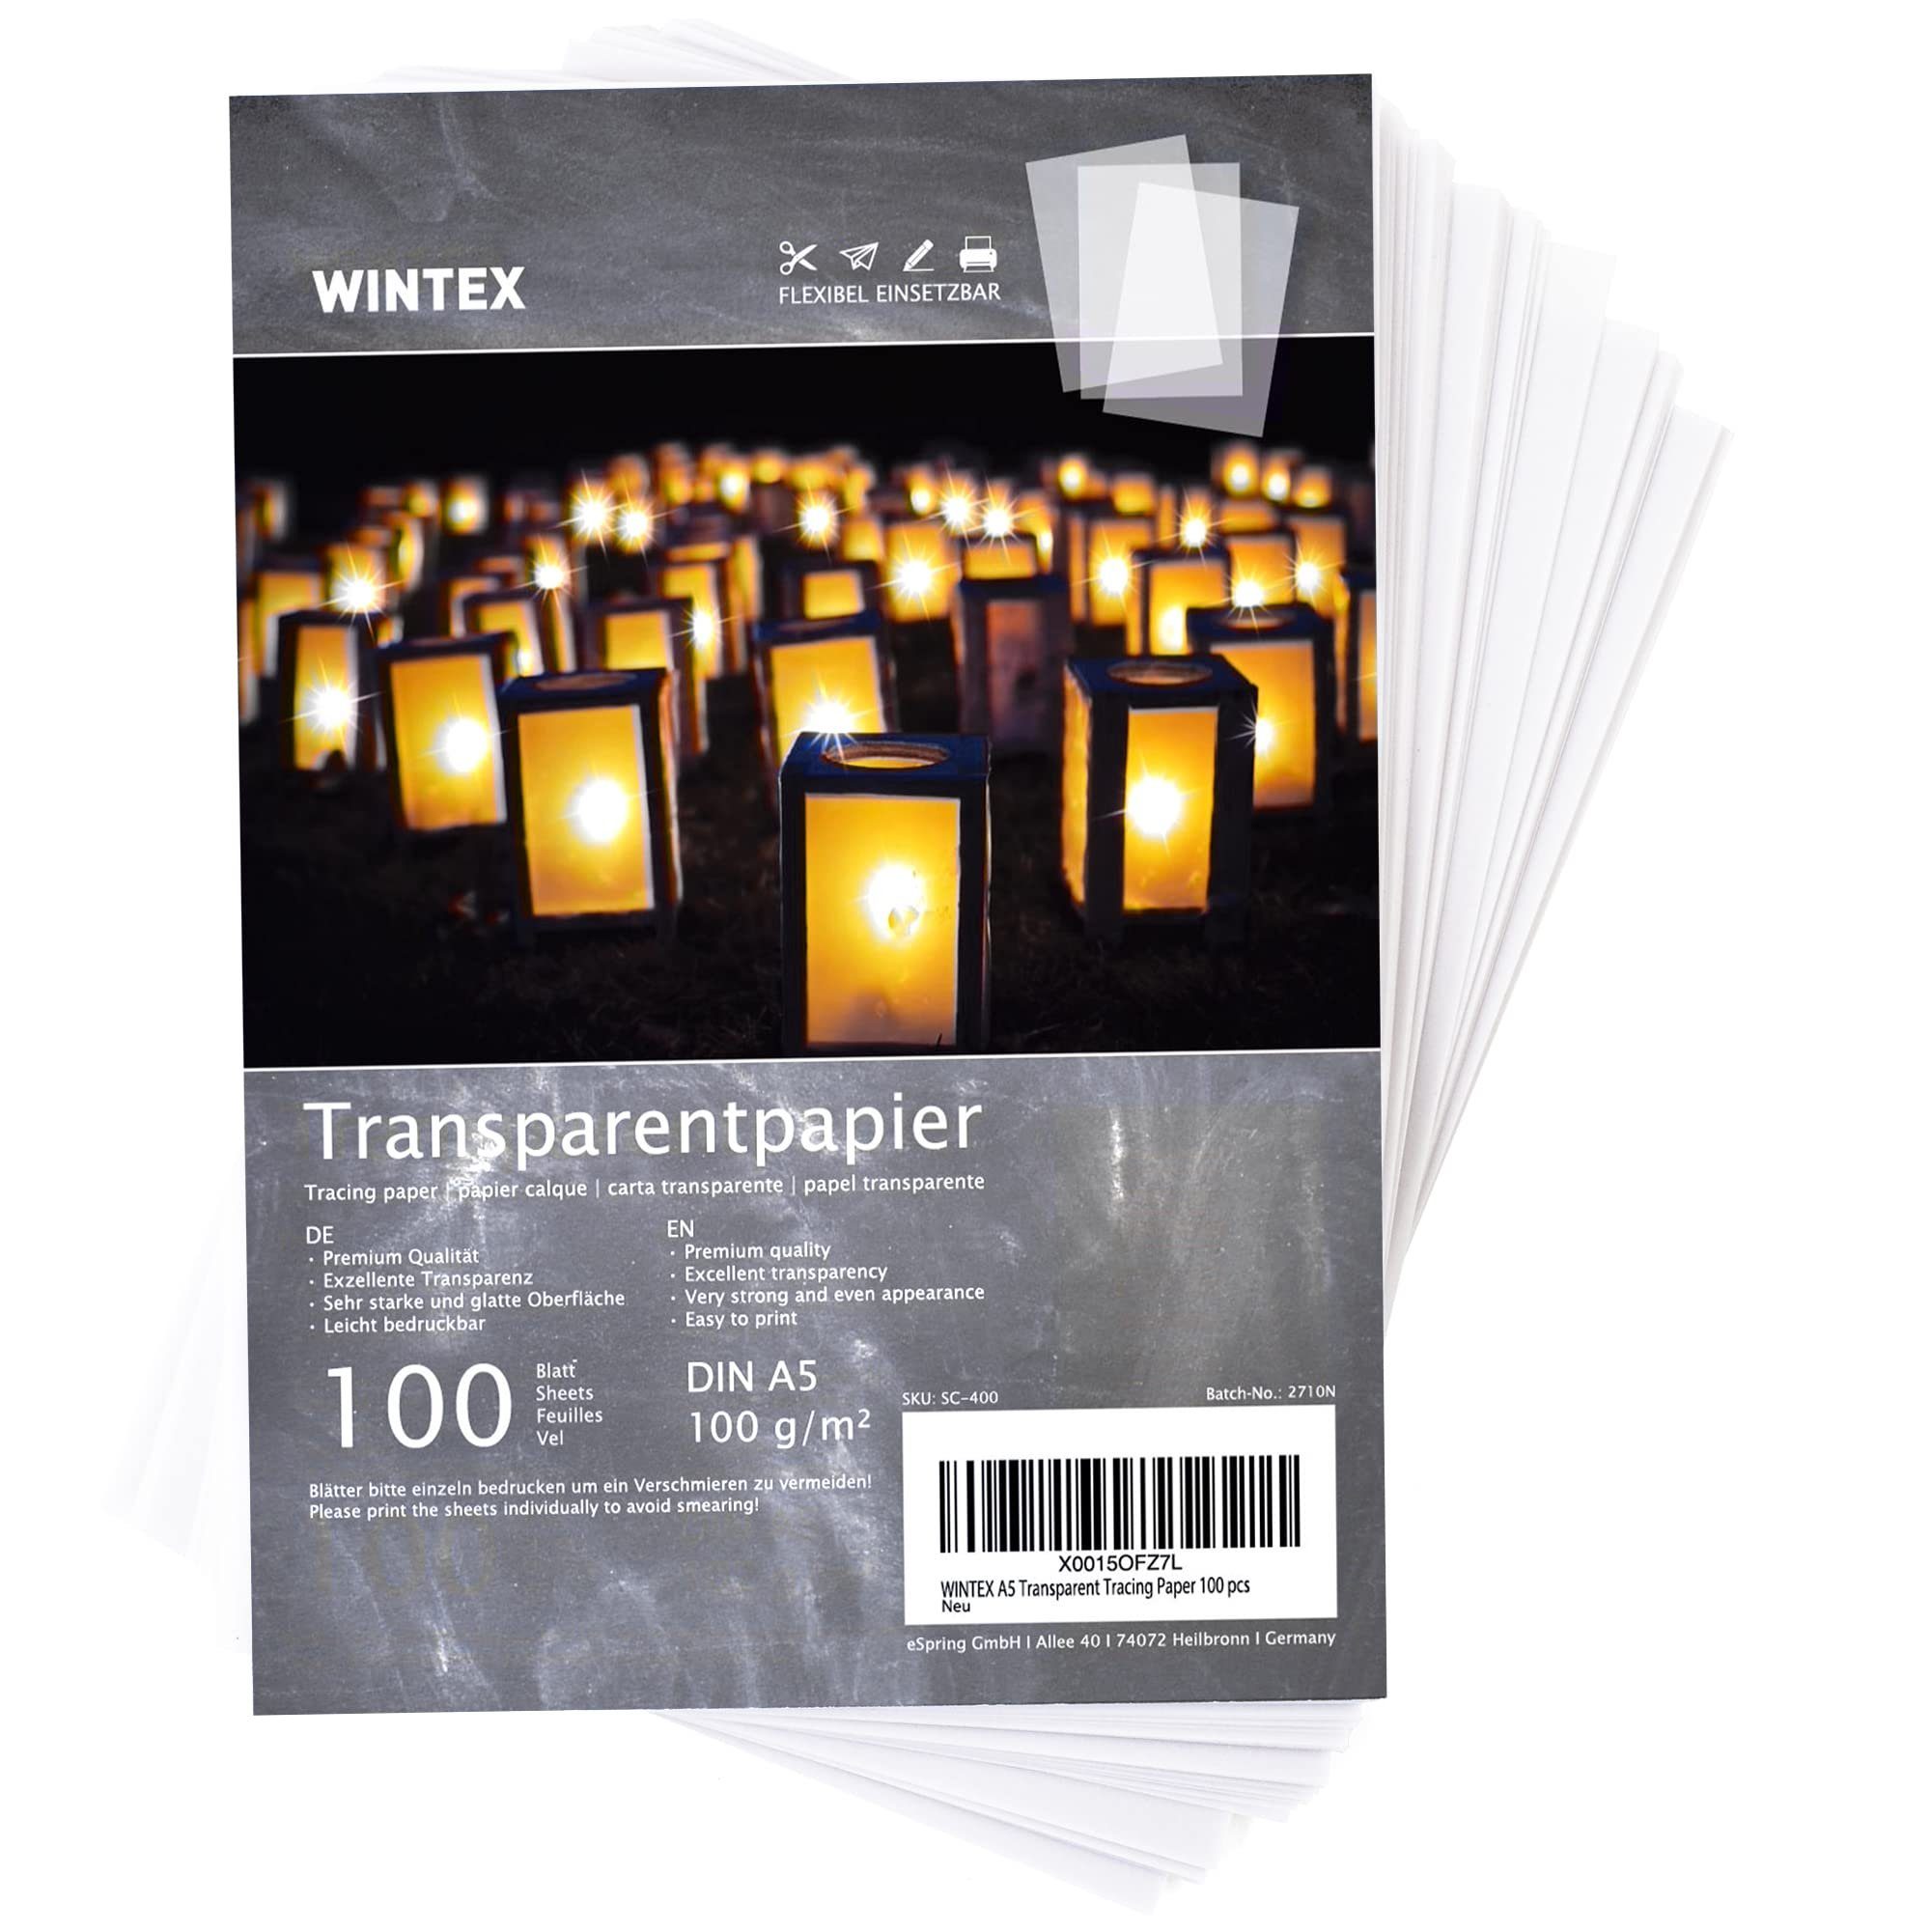 WINTEX Transparentpapier 100 Blatt Transparentpapier DIN A5, weiß, 100 g/qm, Transparentpapier DIN A5, 100 Blatt, weiß, 100 g/qm